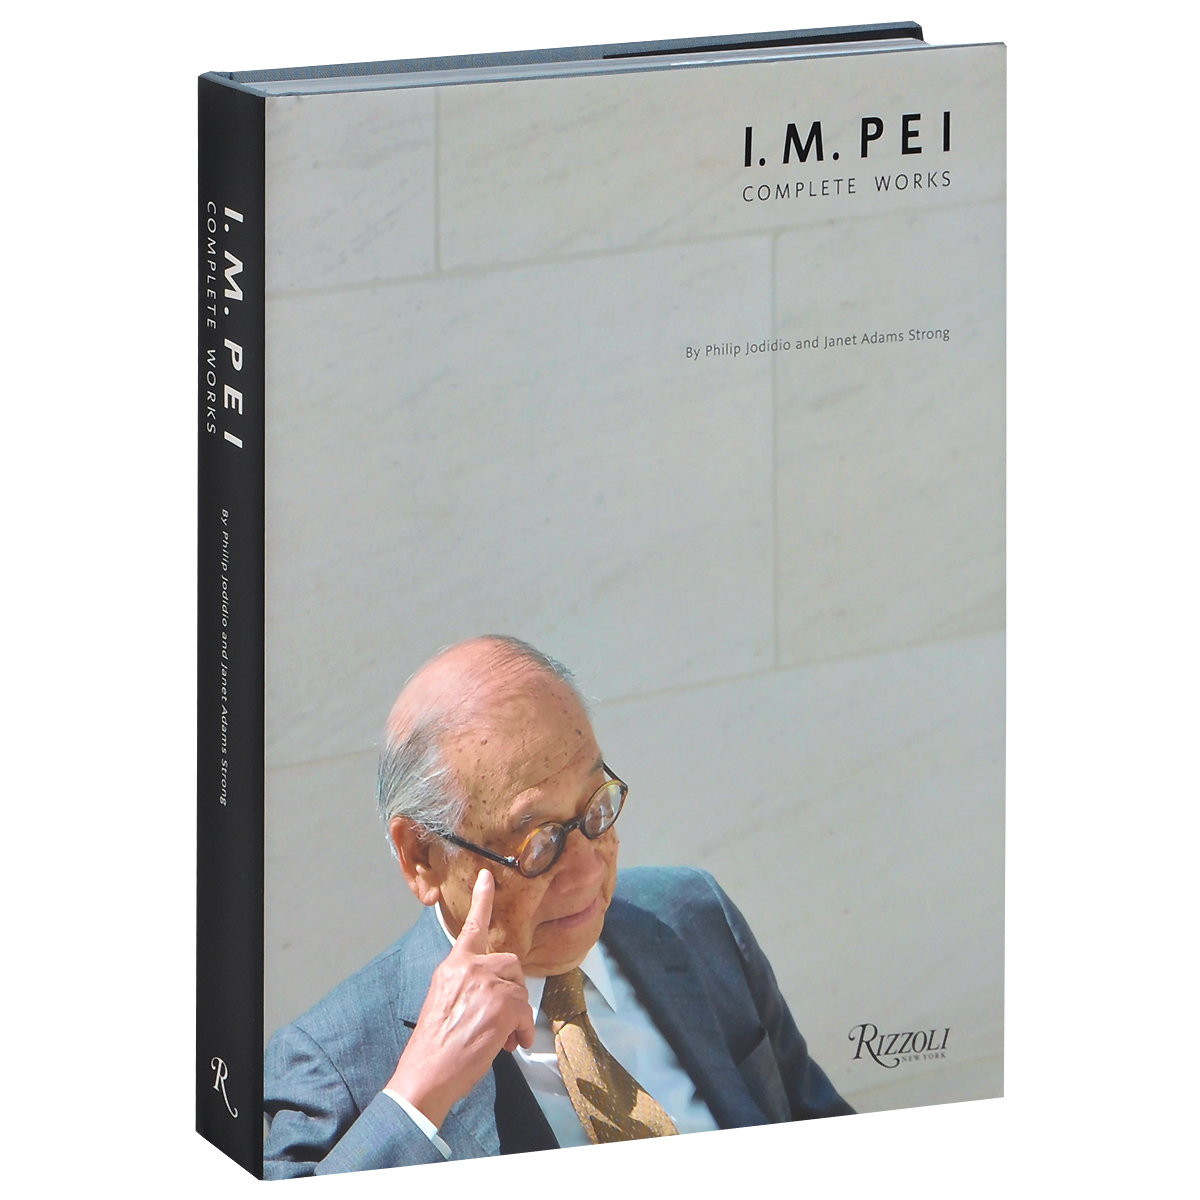 I.M. Pei: Complete Works